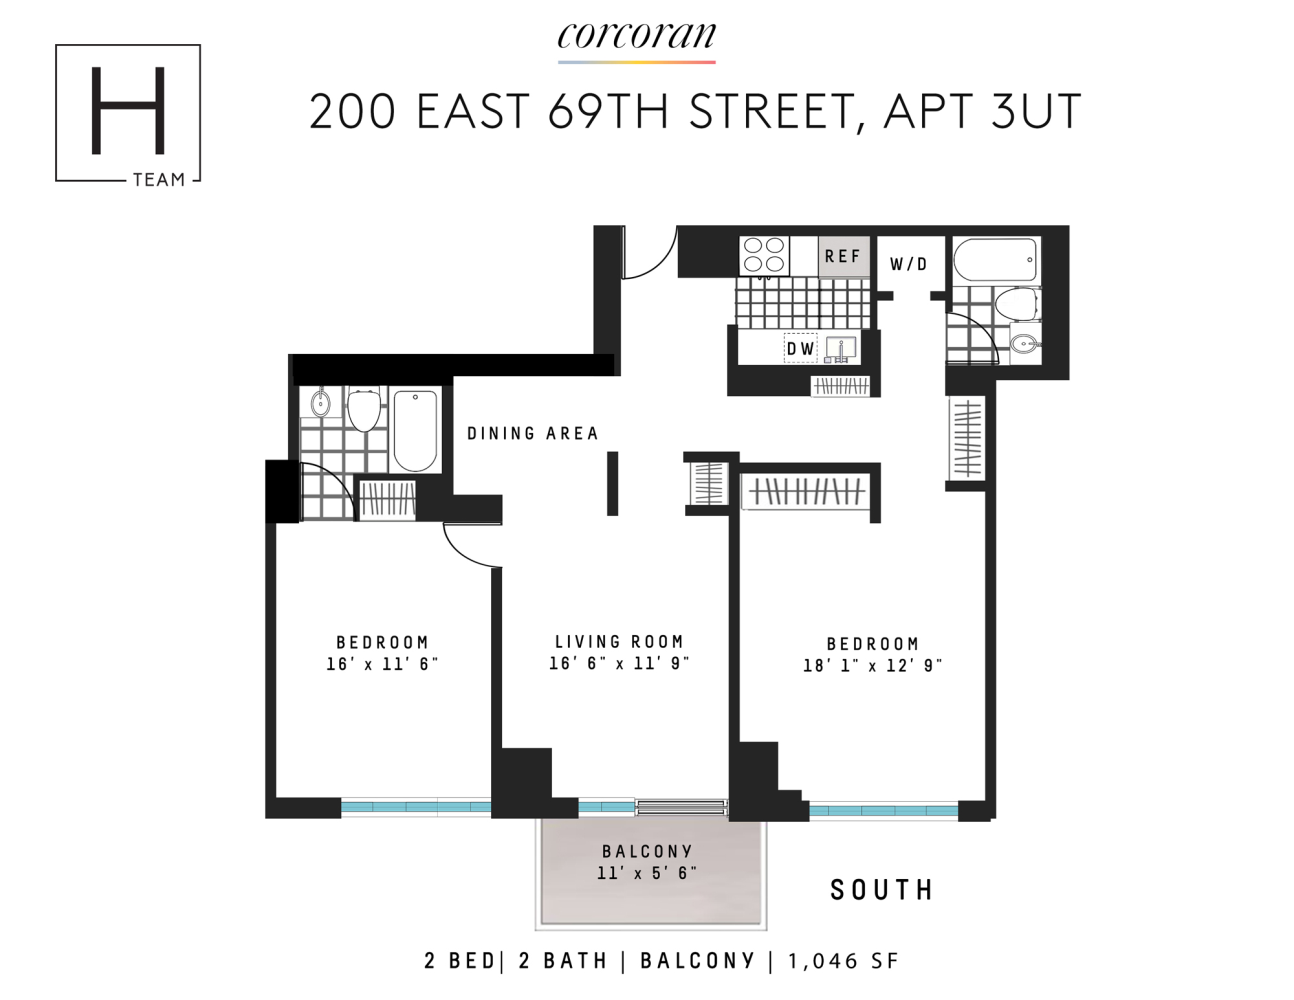 Floorplan for 200 East 69th Street, 3UT